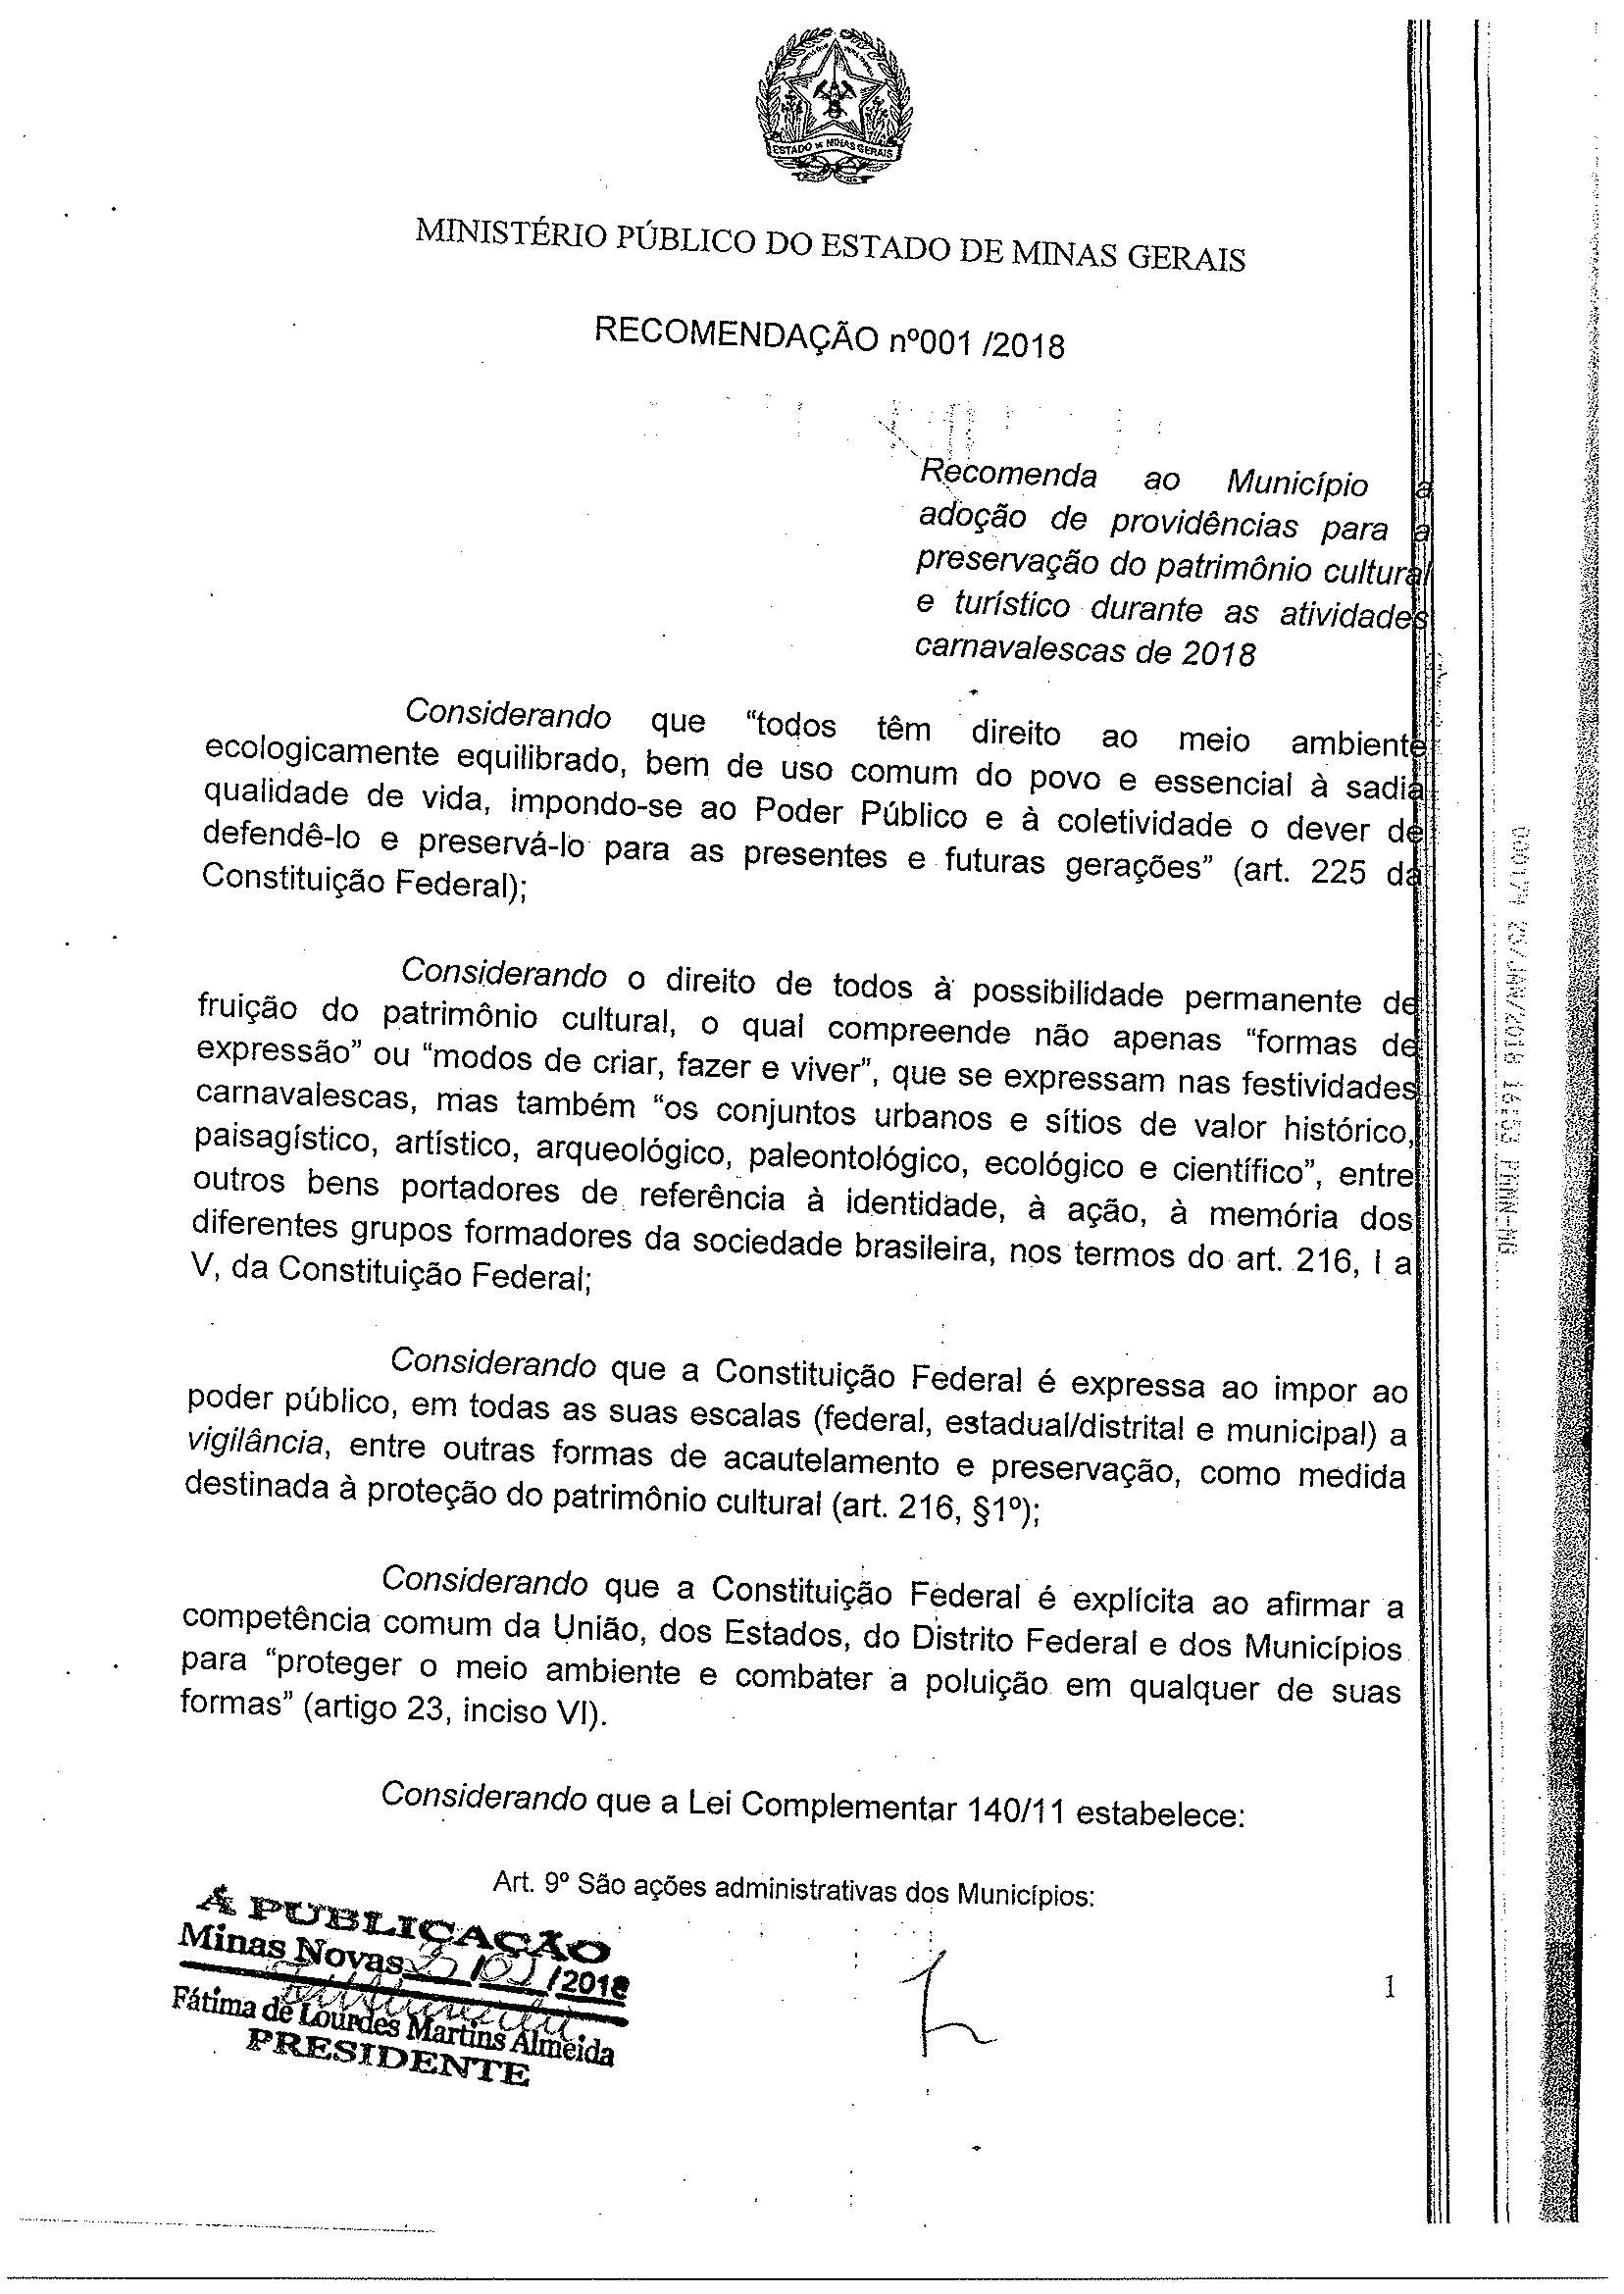 Recomendação nº 001/2018 – Ministério Público do Estado de Minas Gerais